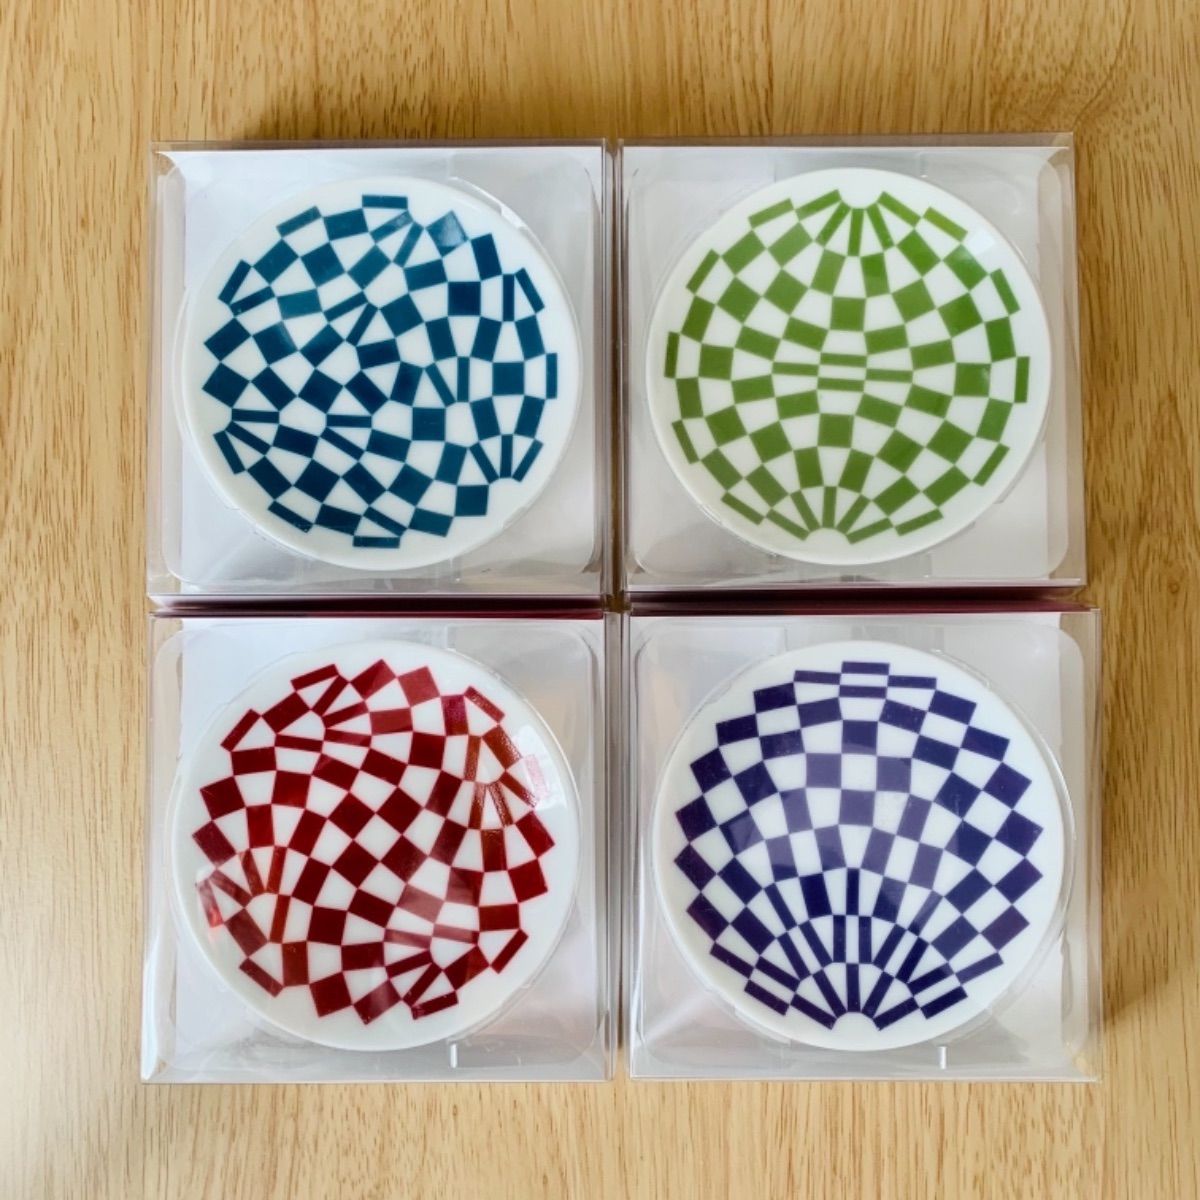 東京2020オリンピック パラリンピック 豆皿 - 食器